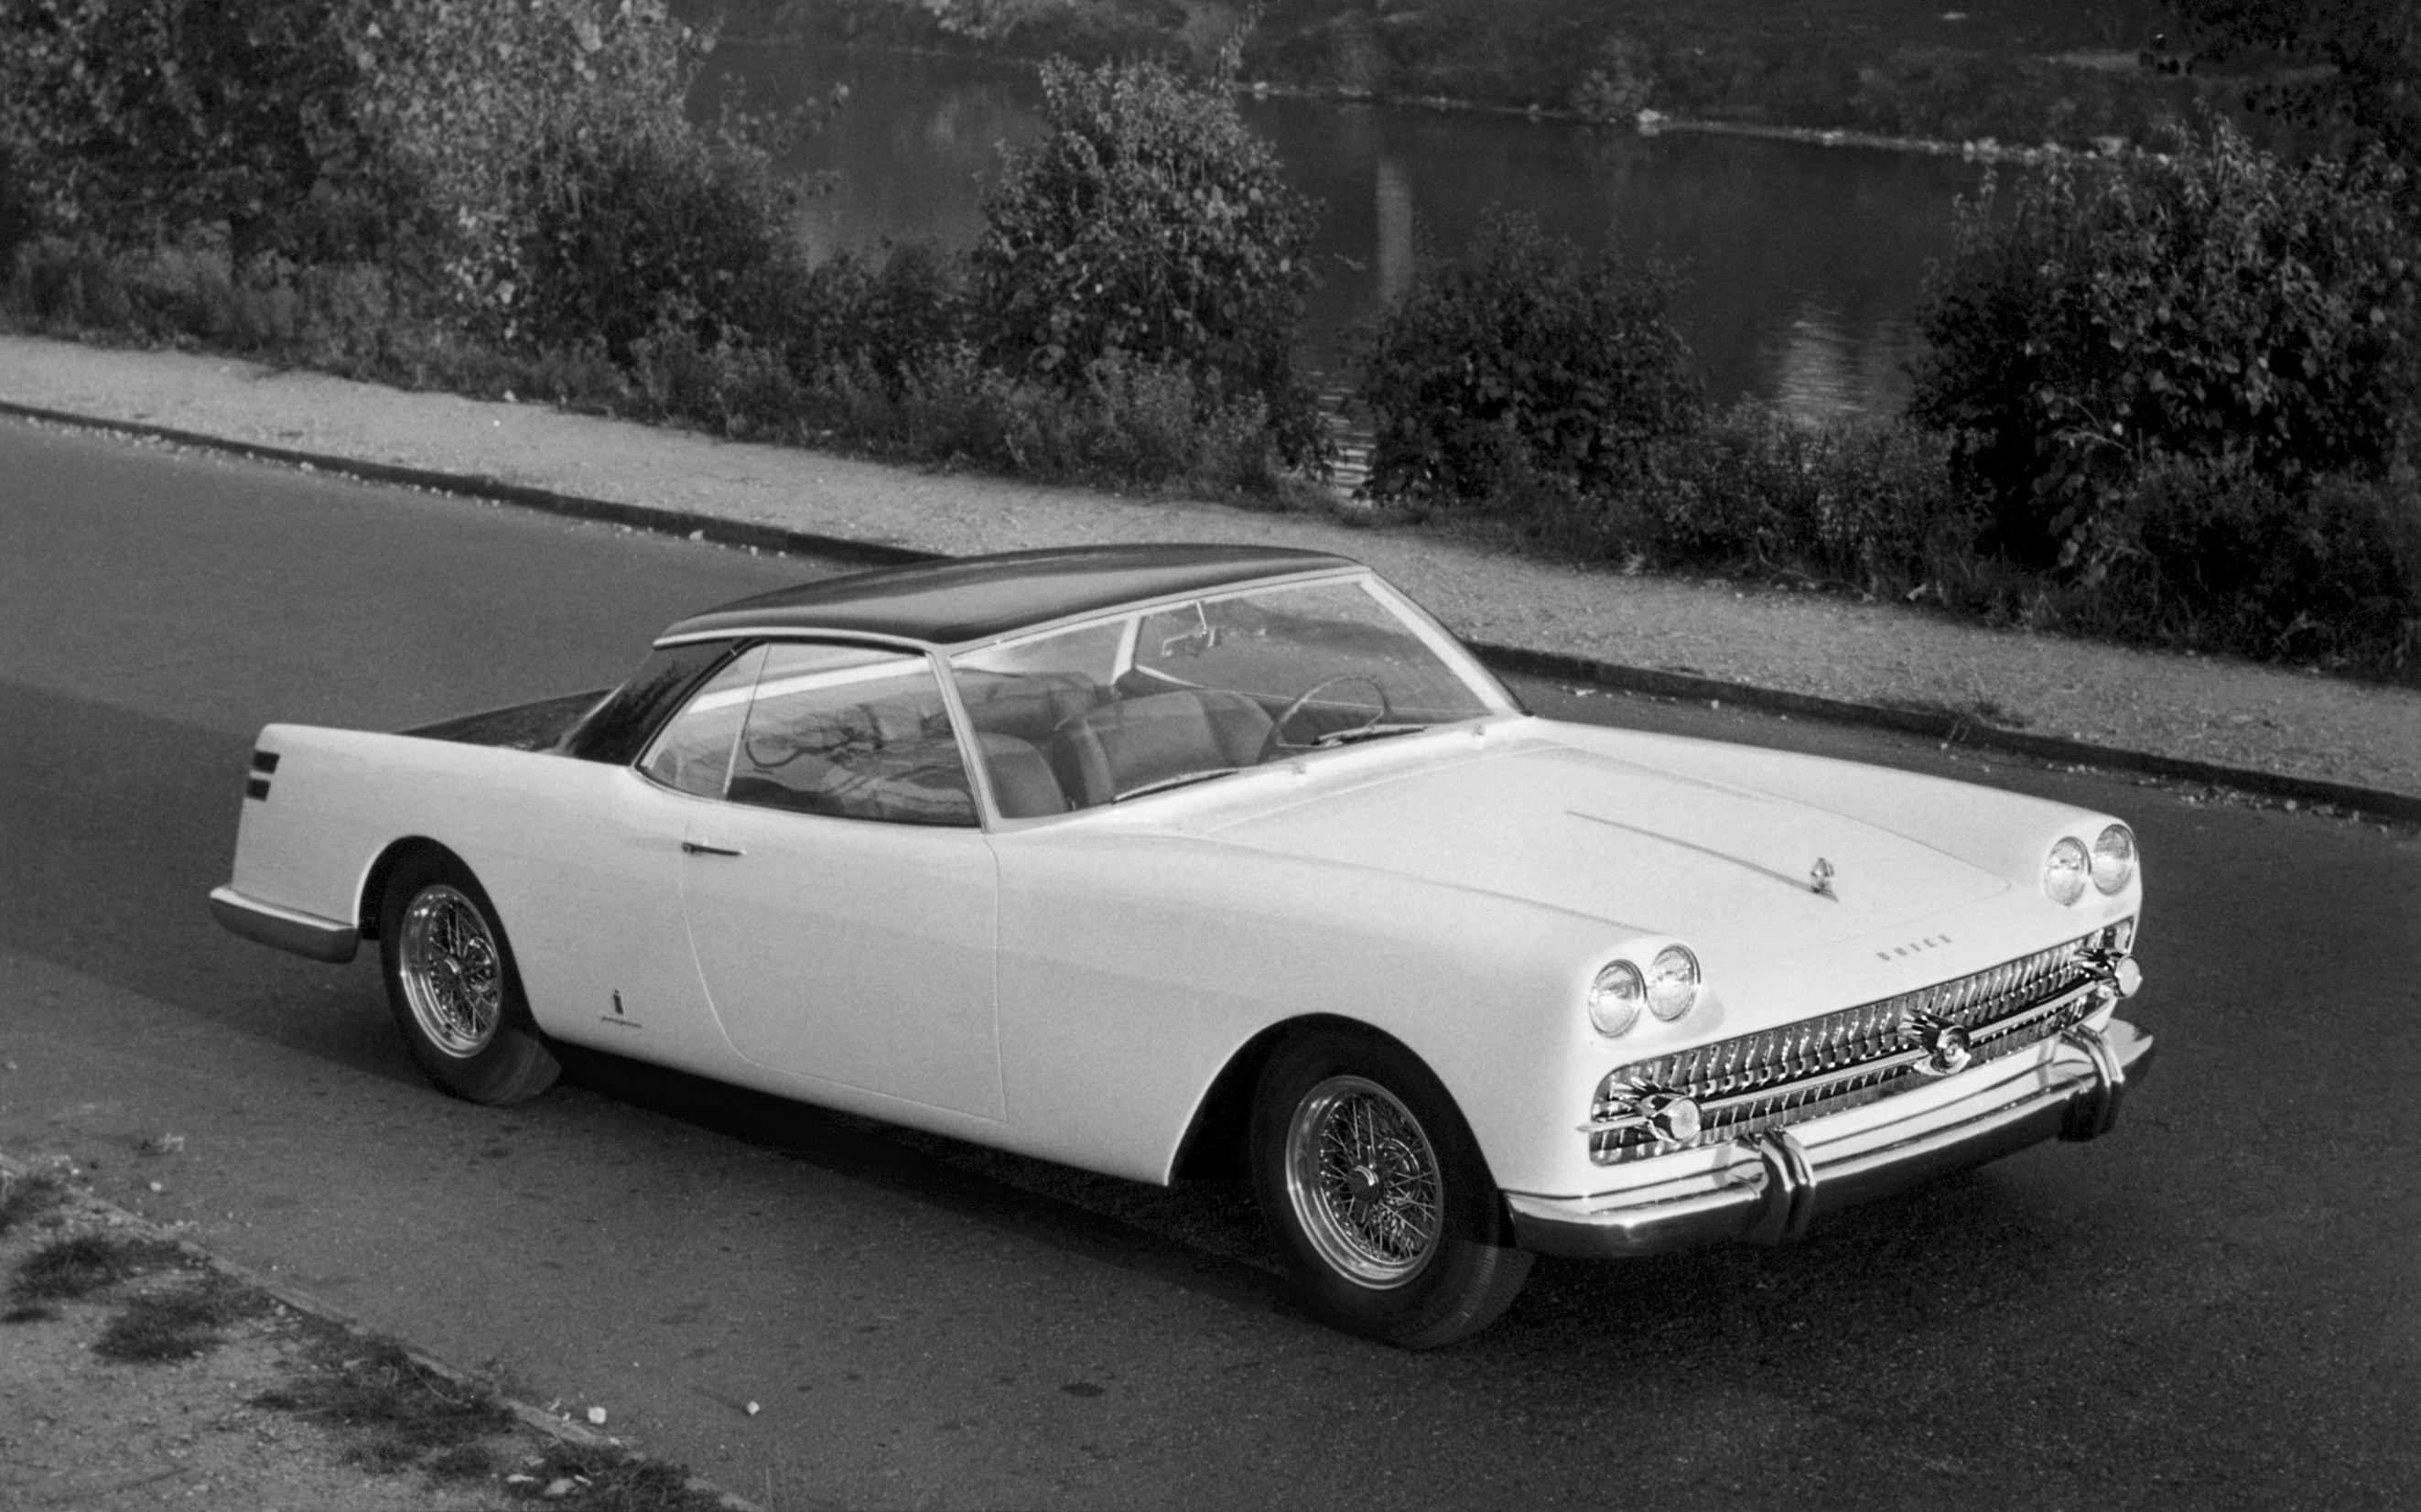 Buick Lido Coupé (Pininfarina), 1957